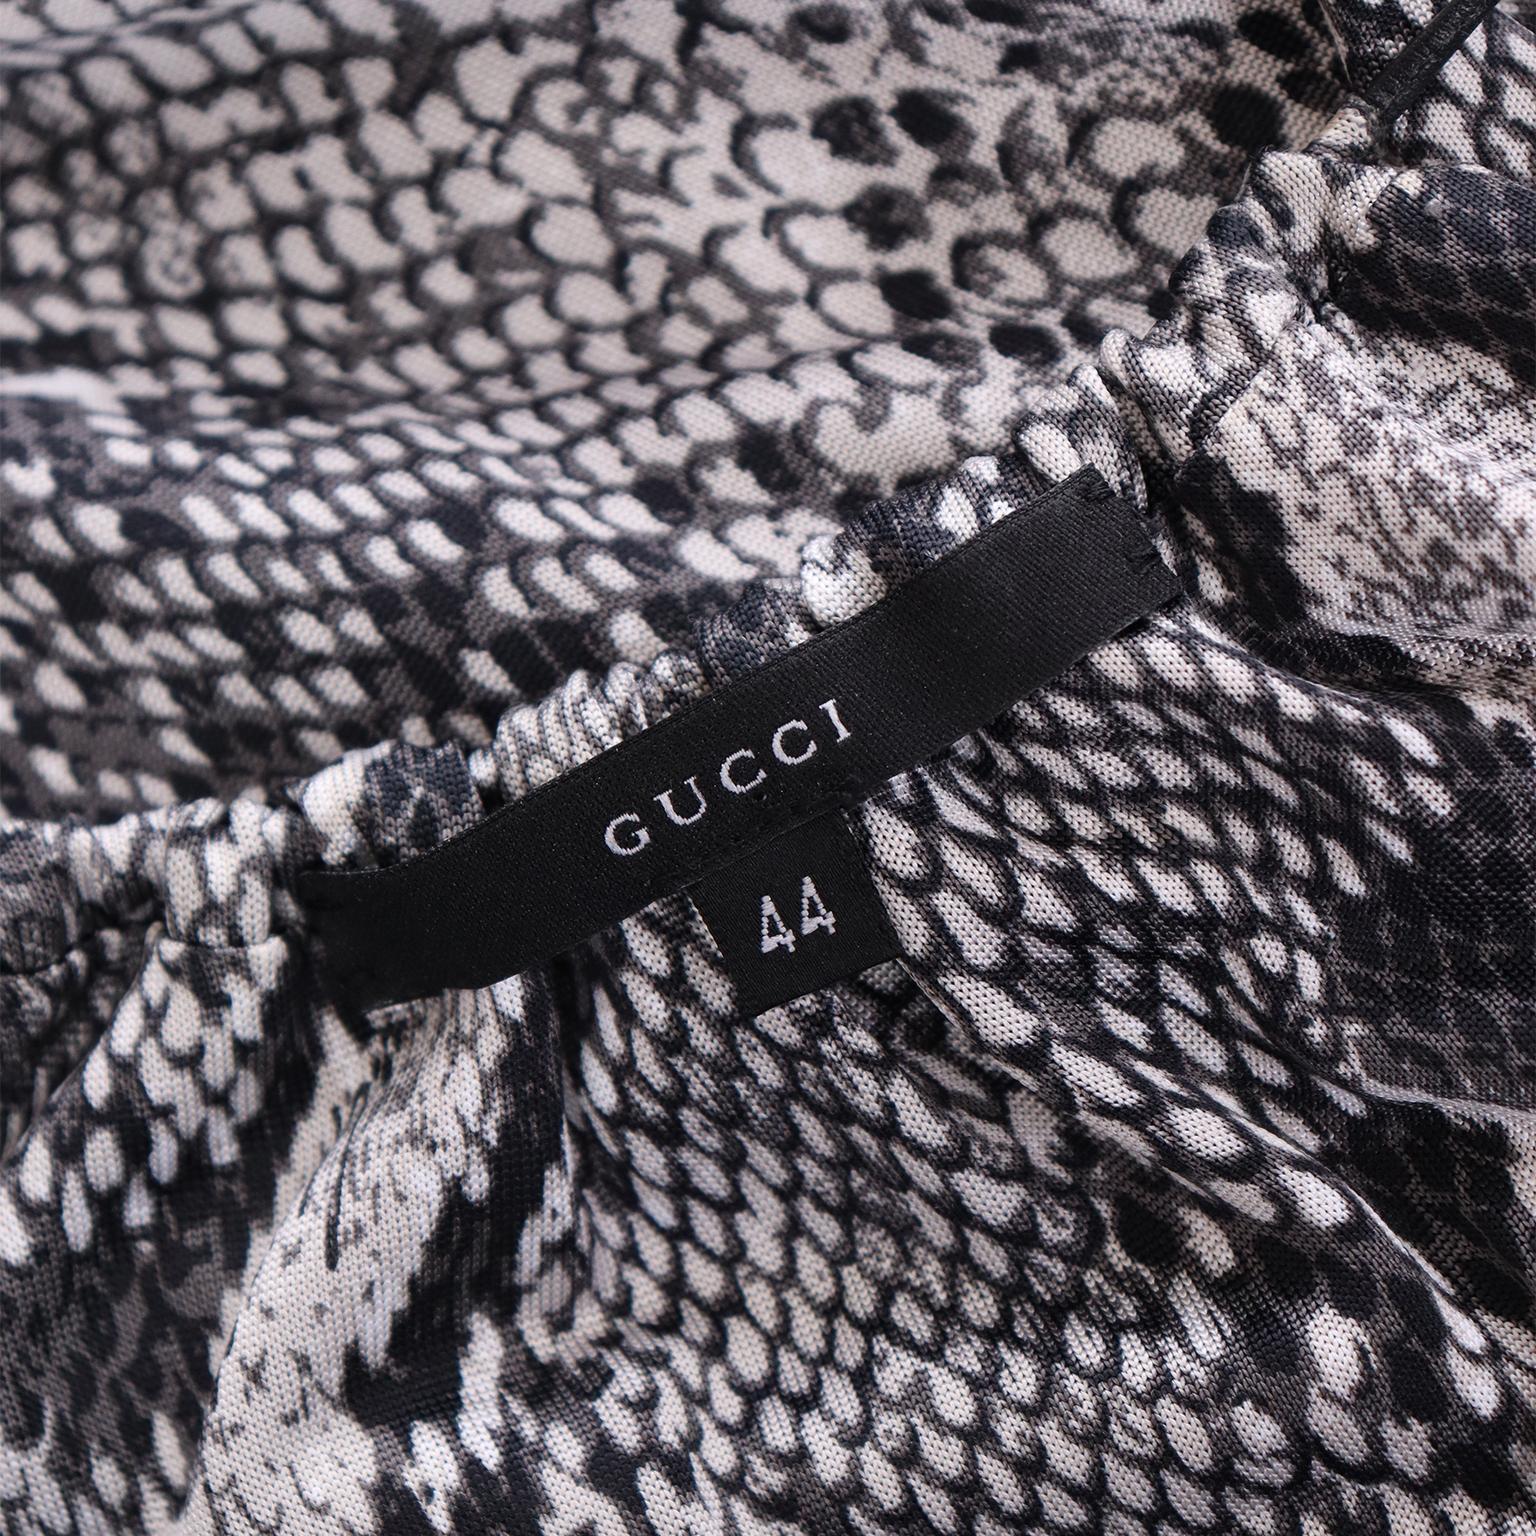 Tom Ford für Gucci S/S 2000 Laufsteg Rayon-Kleid mit Python-Druck und tiefem V-Ausschnitt im Angebot 4